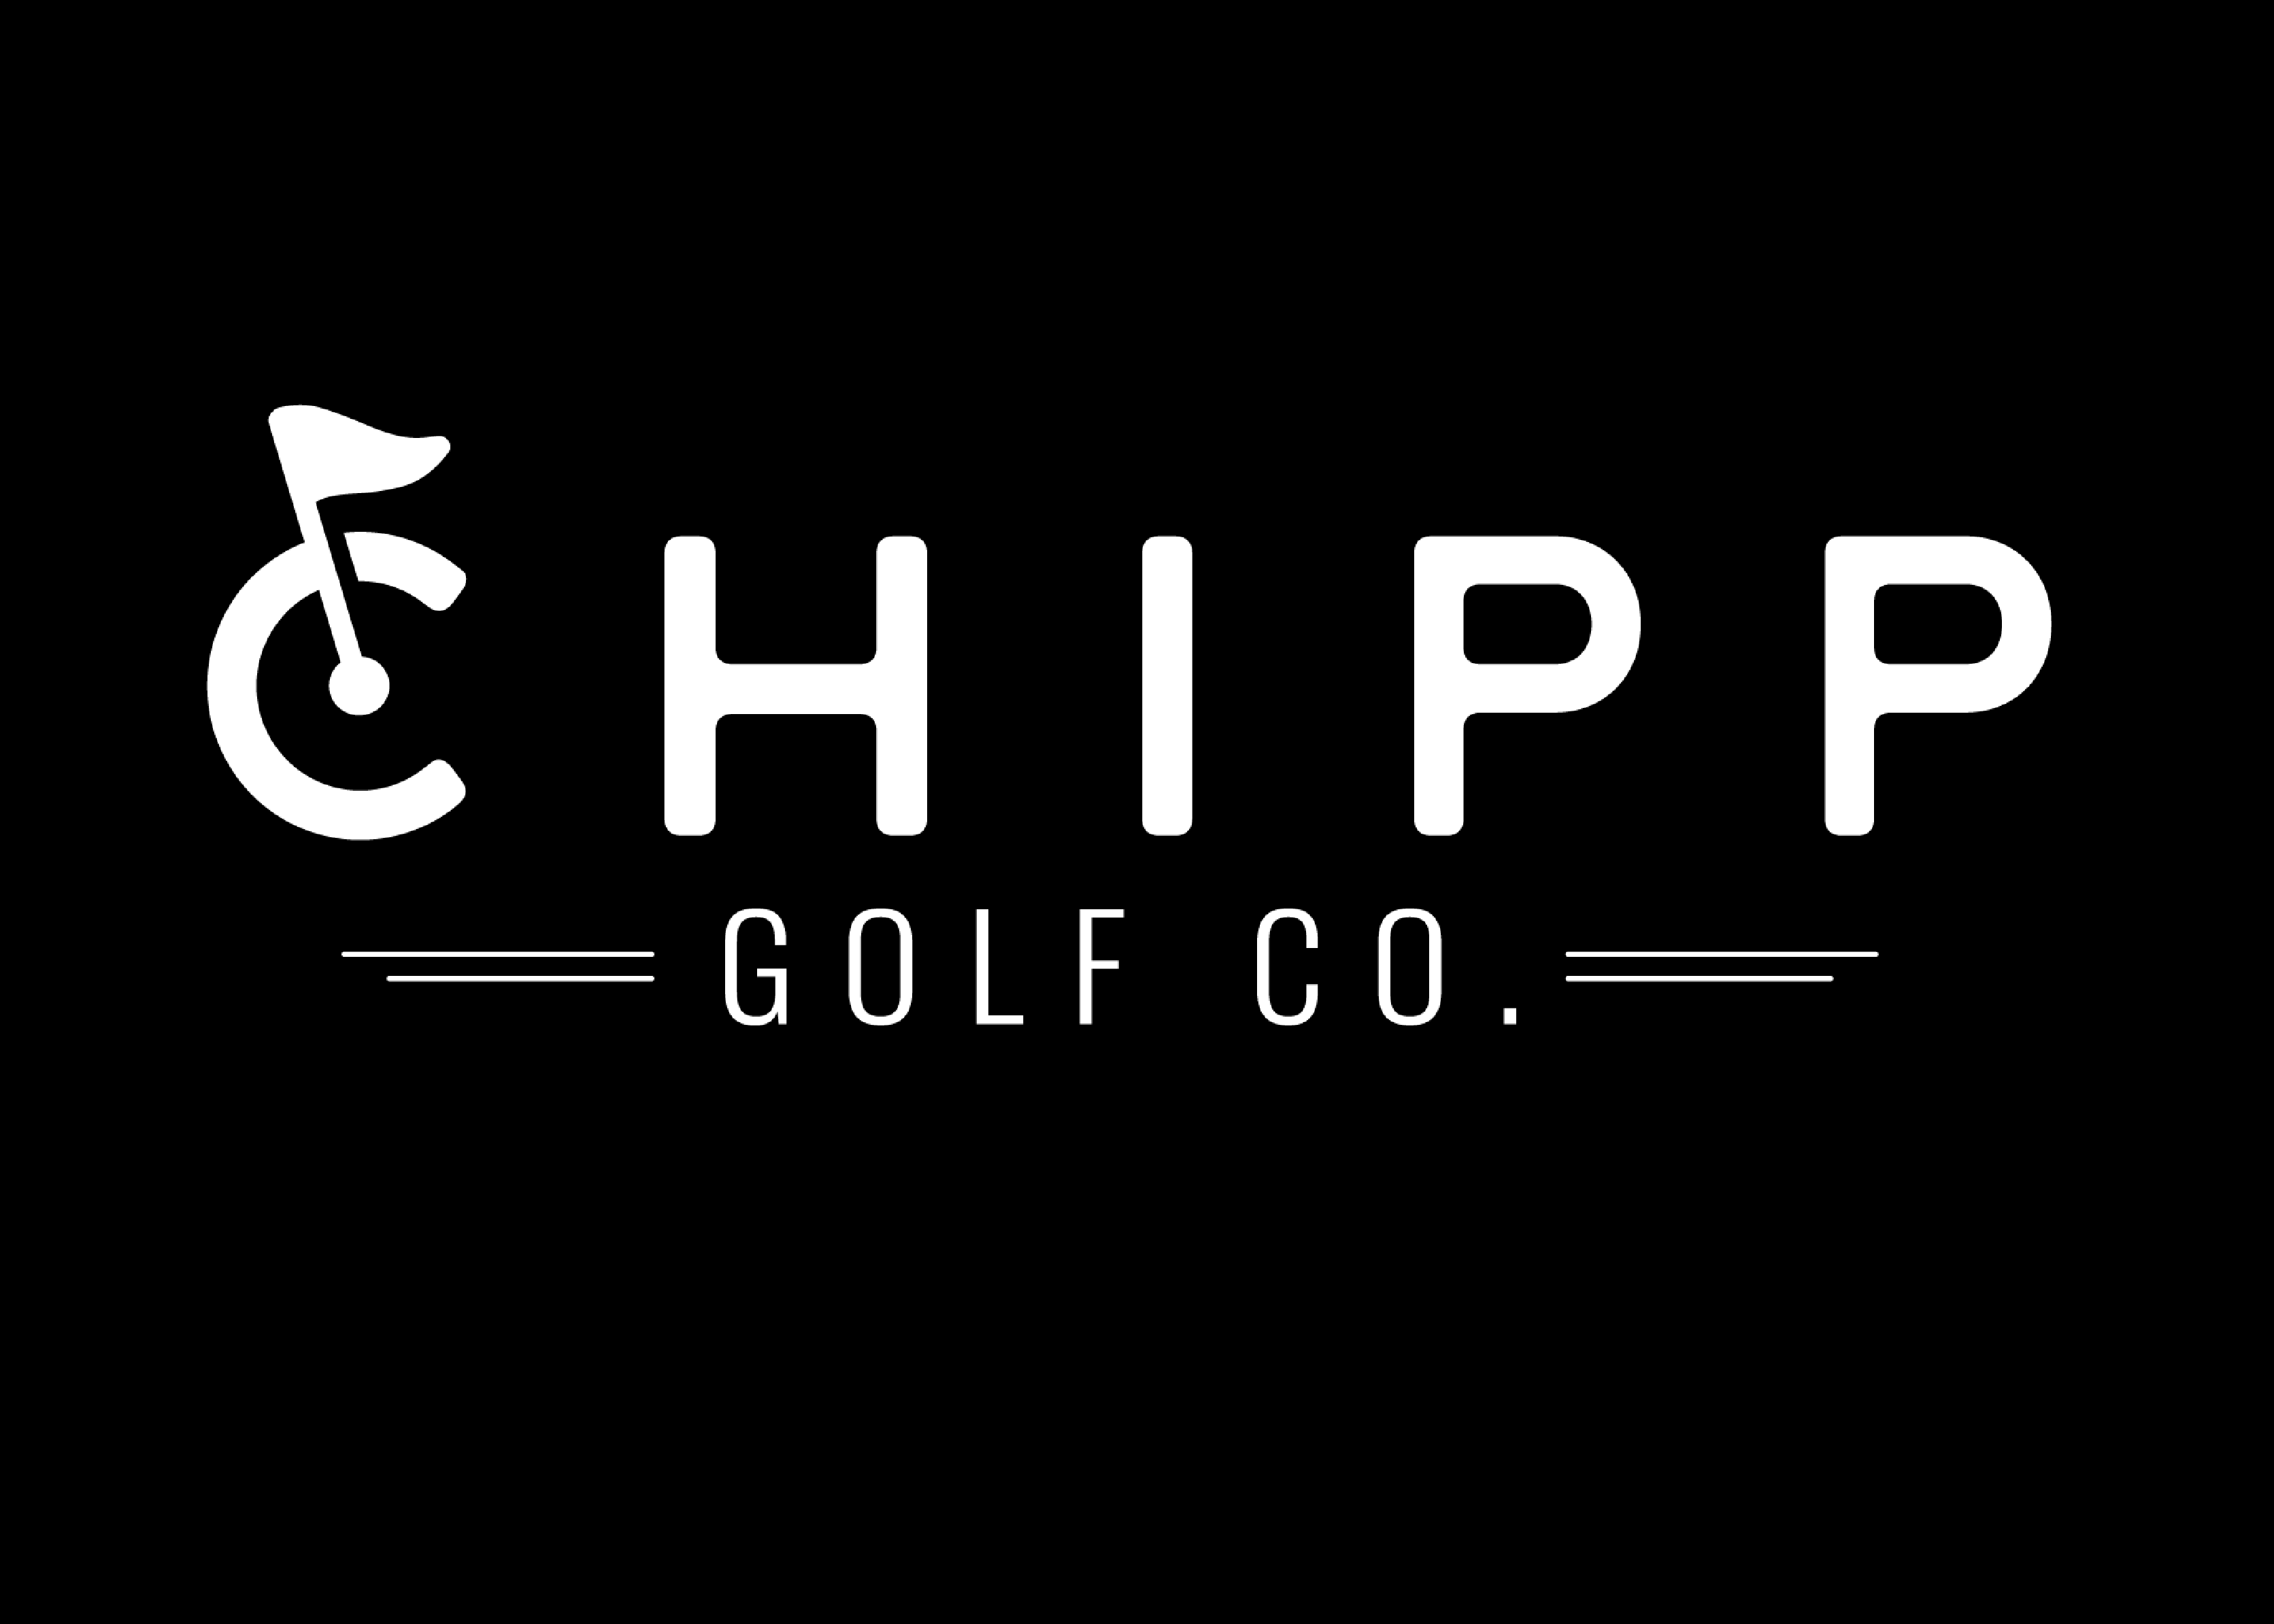 Chipp Golf Co.  Look Good. Play Well. Do Better.